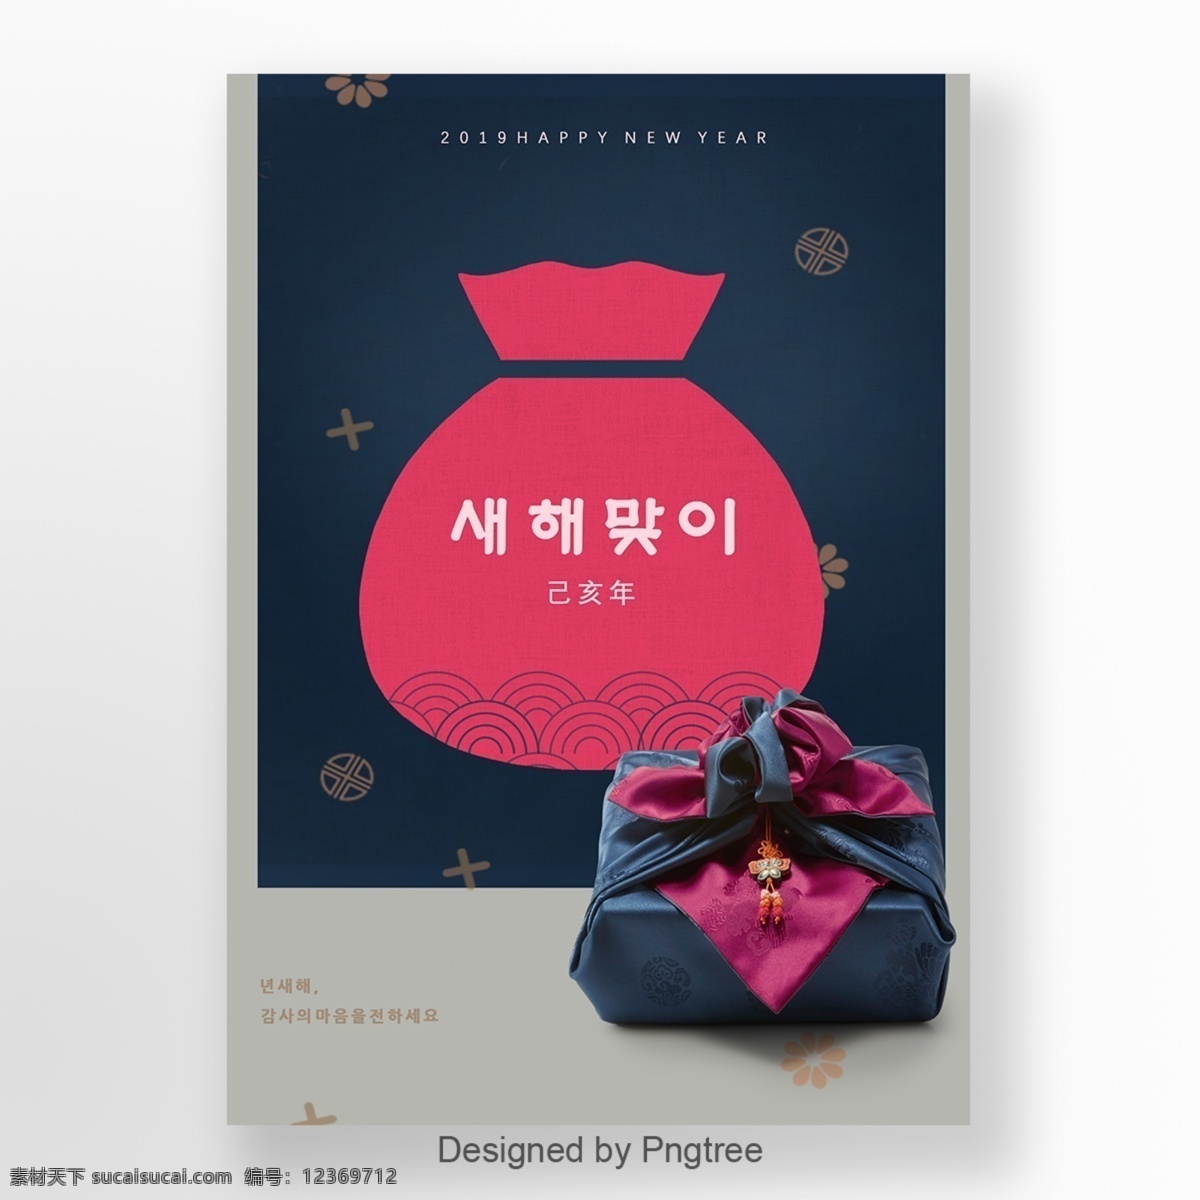 传统 风格 紫色 韩国 新年 海报 谈谈关于 节日气氛 粉 一个祝福袋 韩国的风 大韩民国 质地 金色 手写